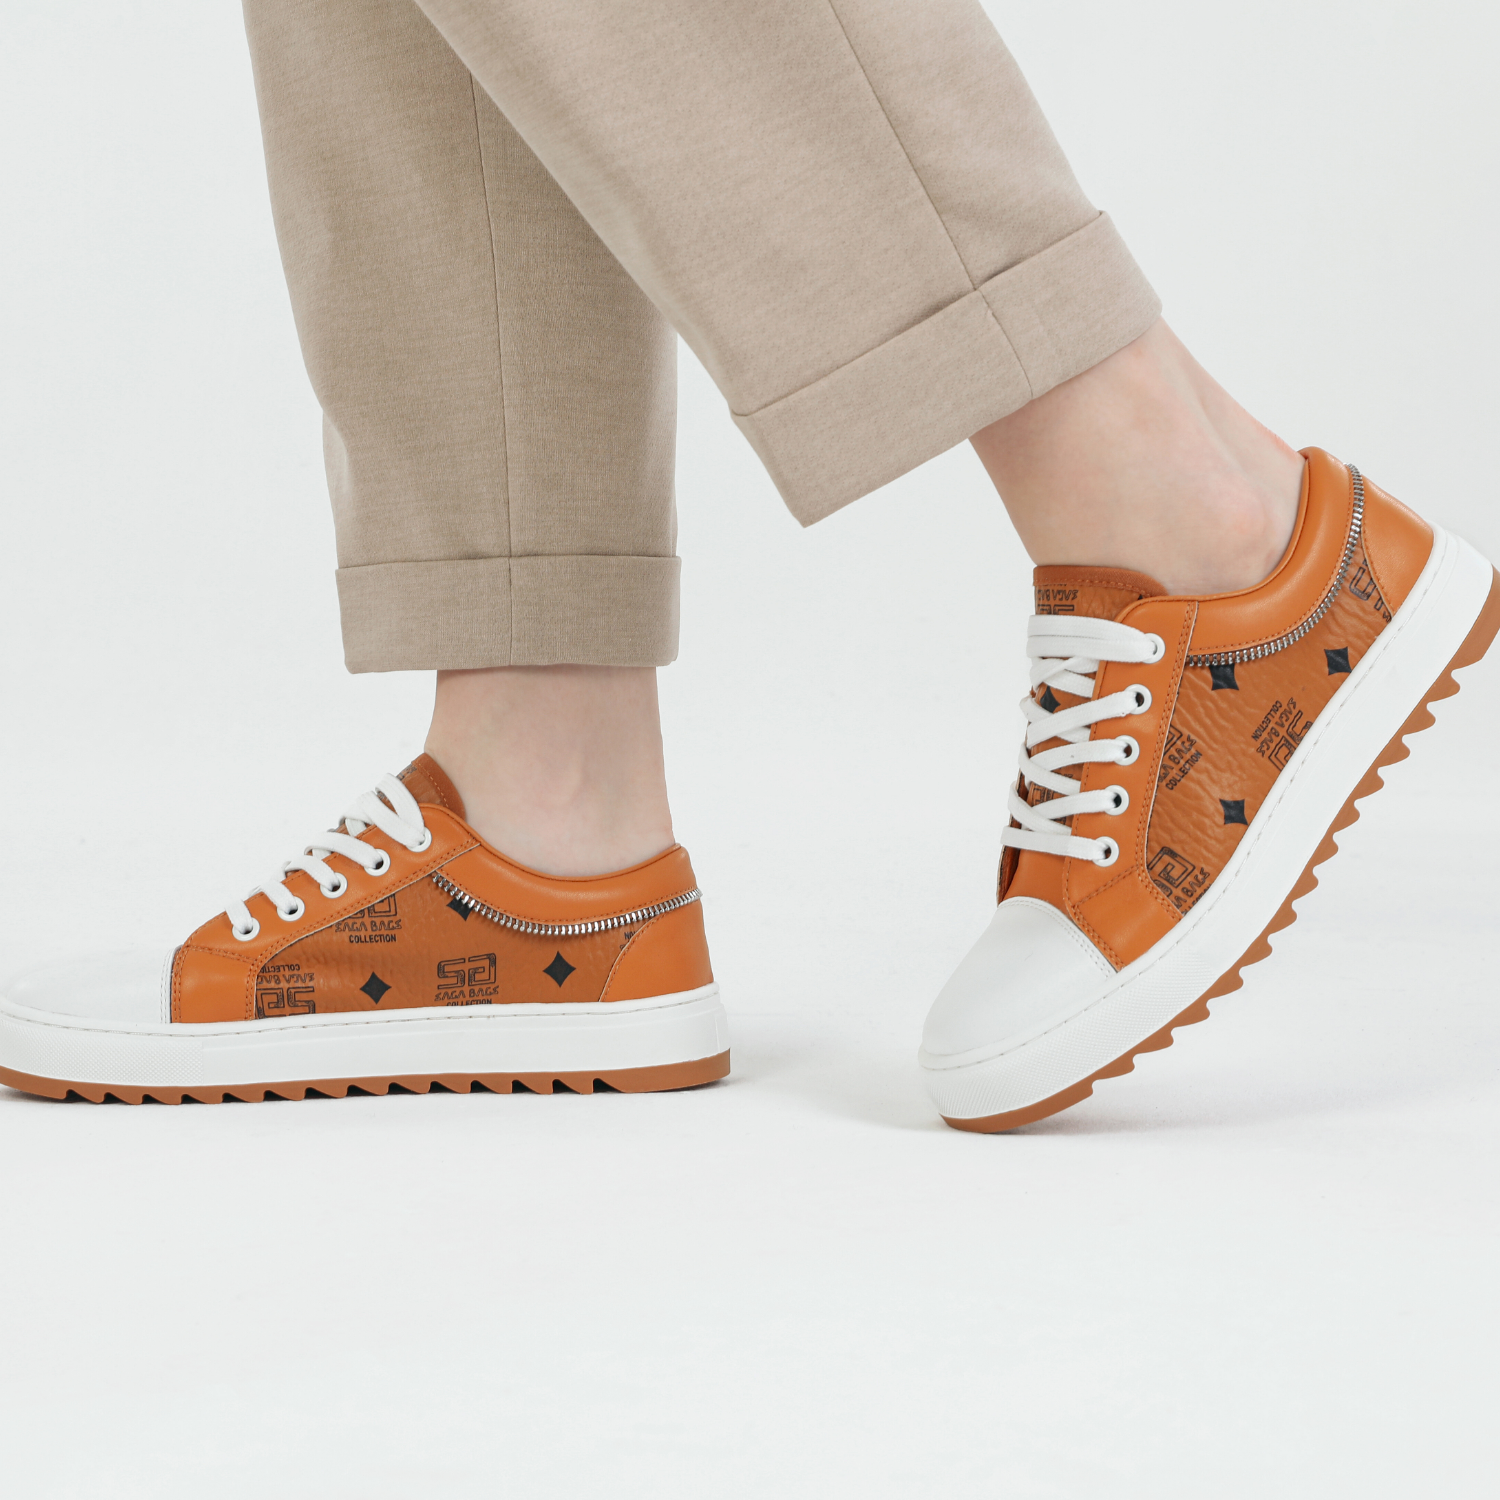 زاوية خلفية لحذاء رياضي برتقالي من ساغا يظهر النعل المتعرج والسحاب الجانبي لسهولة الاستخدام